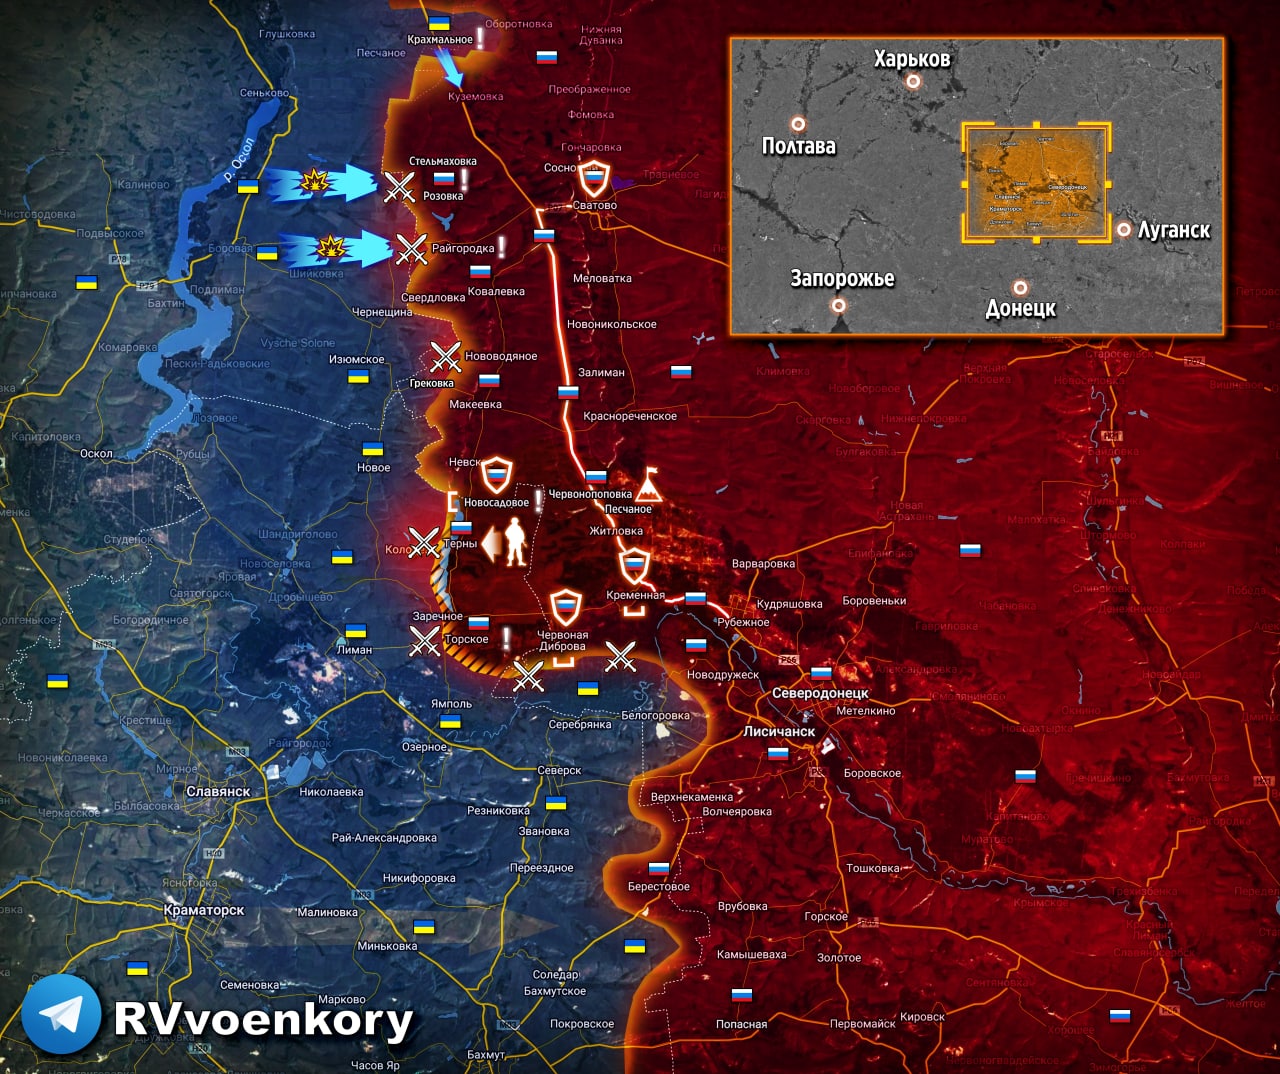 2023 10 25. Боевые действия. Линия фронта на Донбассе. Карта боевых действий на Украине октябрь 2022. Сегодняшние линия фронта.